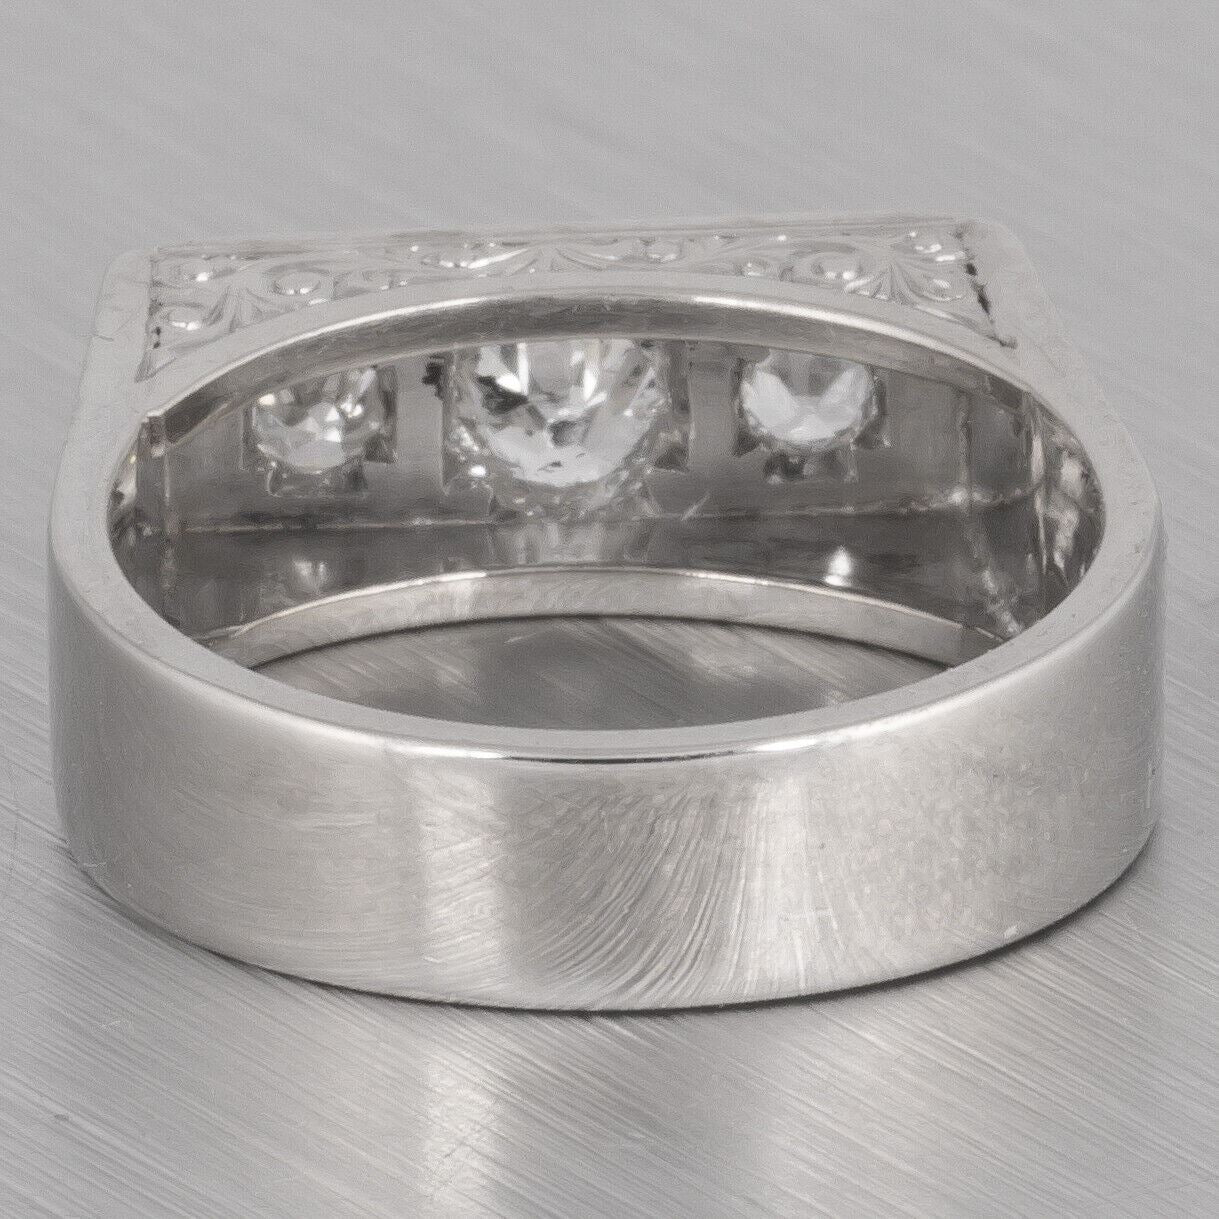 Antique Art Deco 14k White Gold Three Stone Engraved Diamond Ring 0.75ctw sz7.25